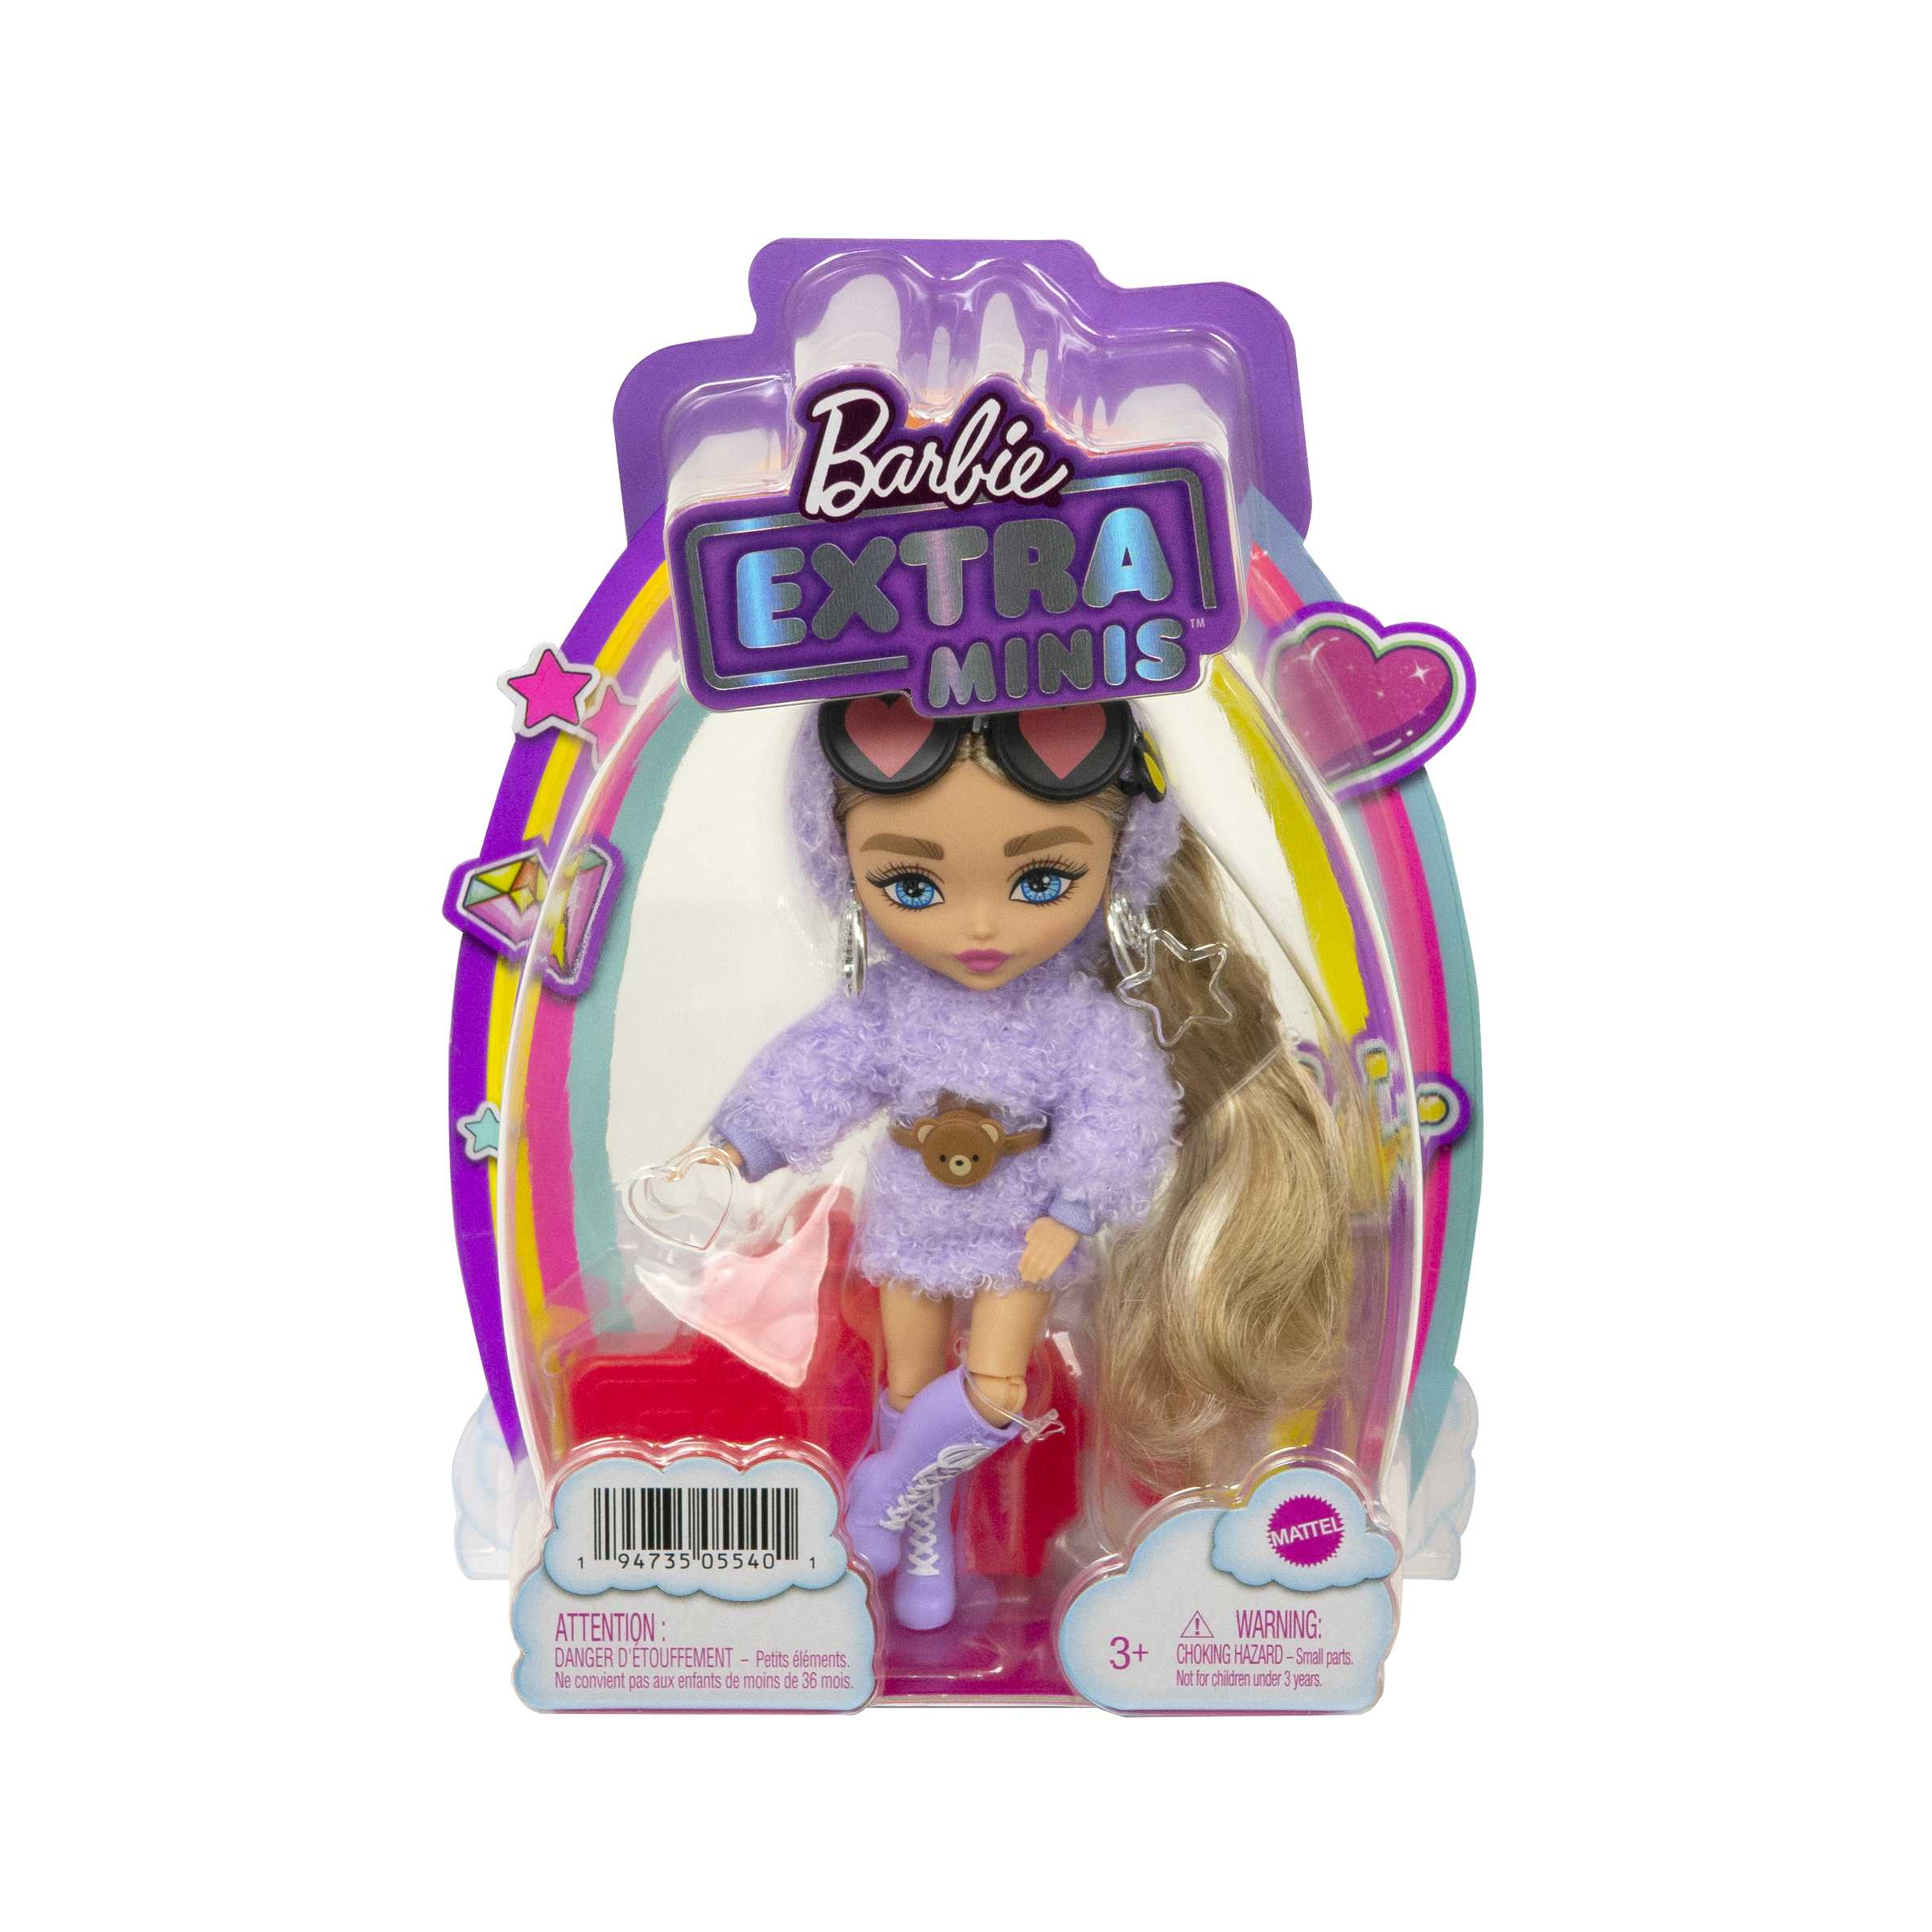 Barbie-extra minis mini bambola articolata con vestito lilla, occhiali a cuore e morbidi capelli biondi, giocattolo per bambini 3+ anni, hgp66 - Barbie